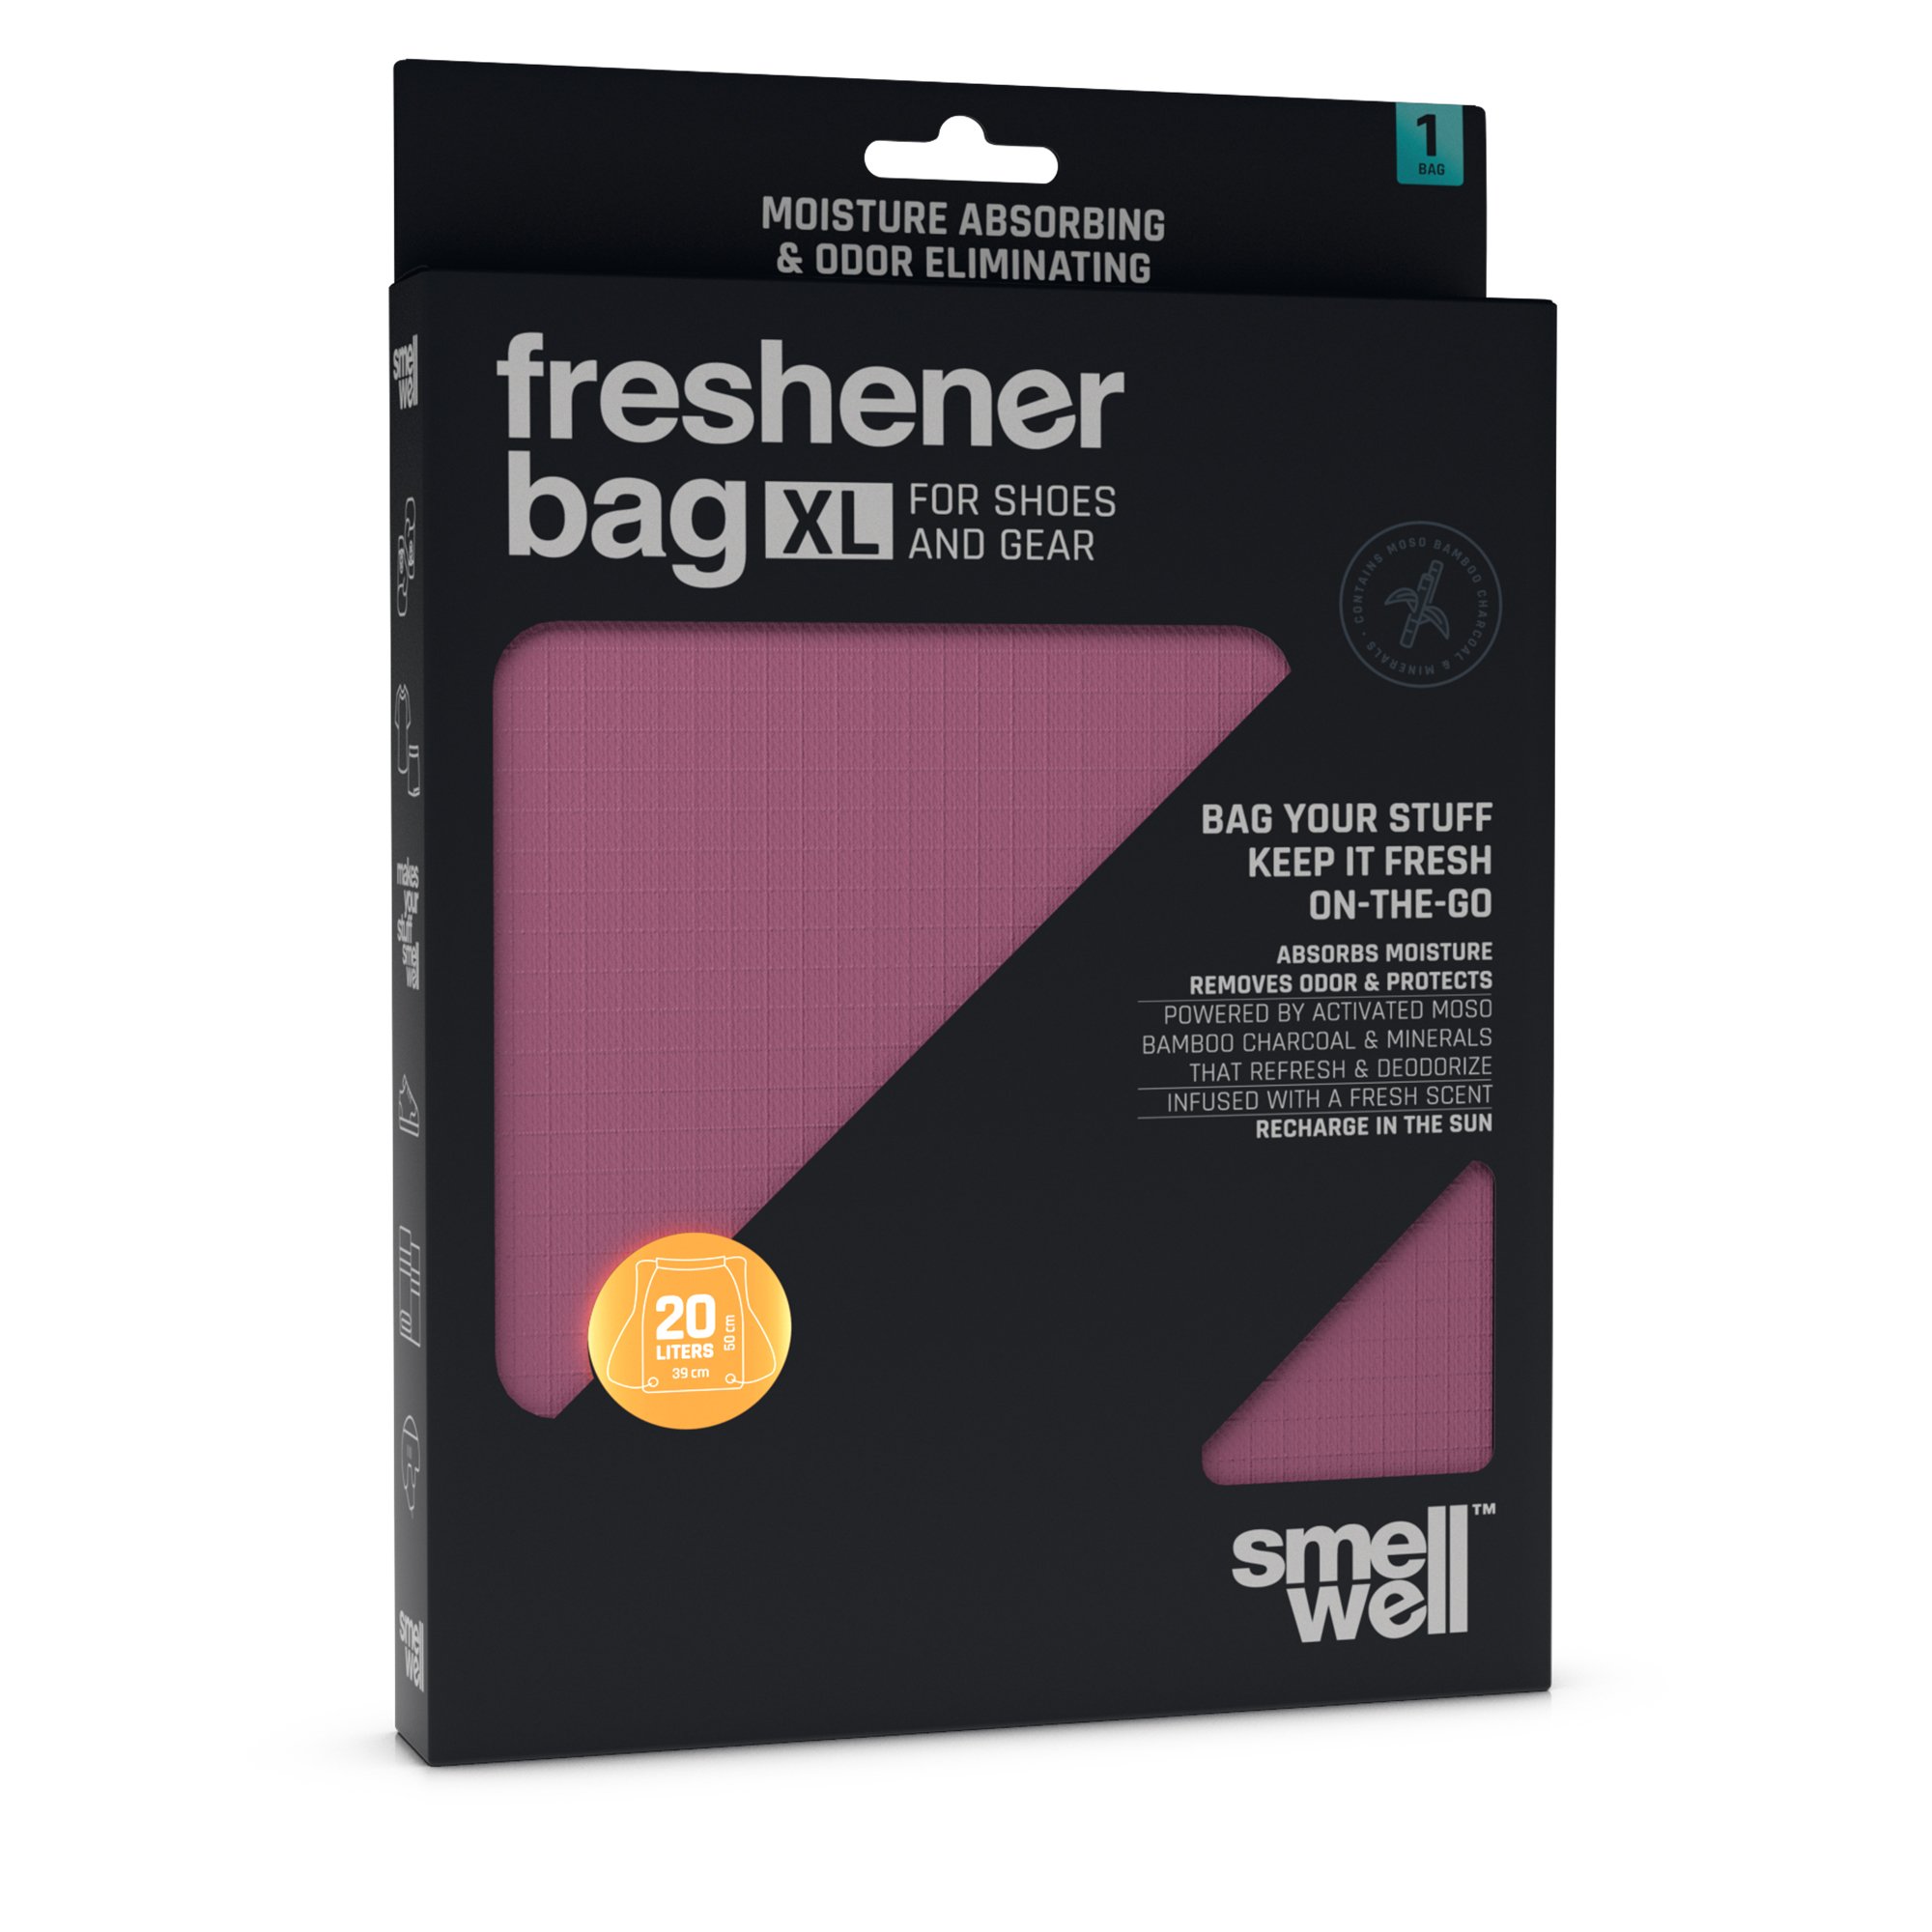 SmellWell Freshener Bags XL